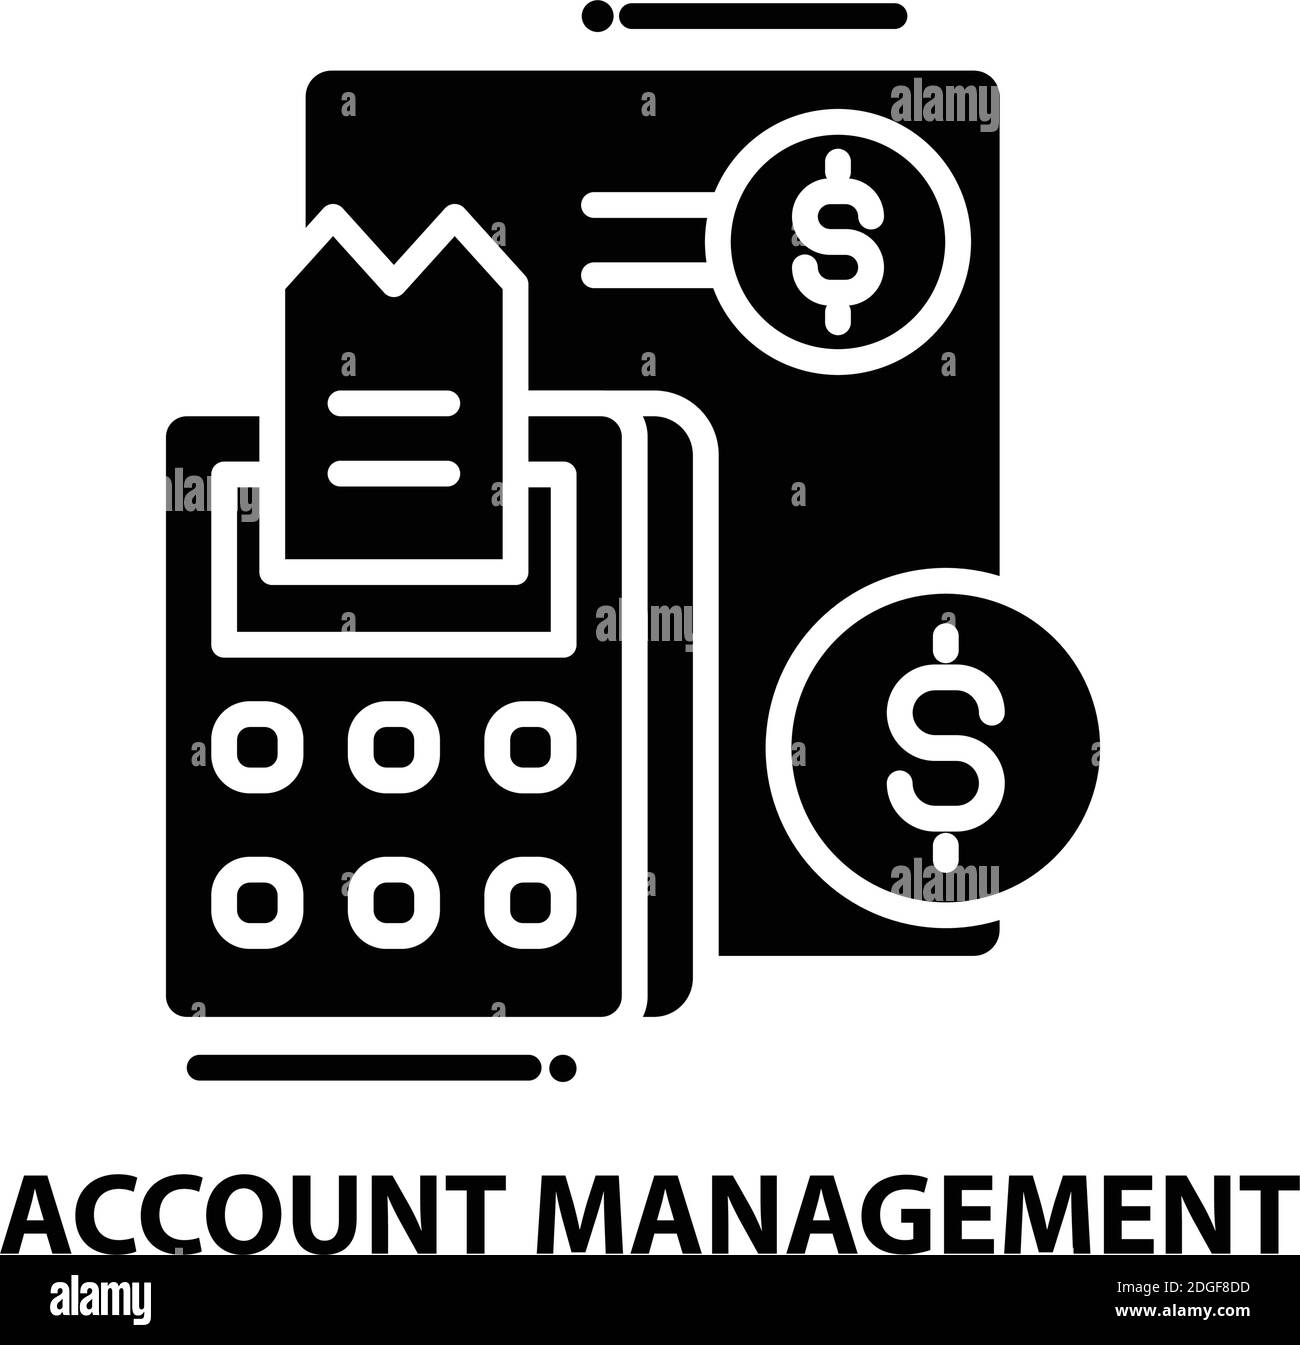 icona di gestione account, segno vettoriale nero con tratti modificabili, illustrazione concettuale Illustrazione Vettoriale